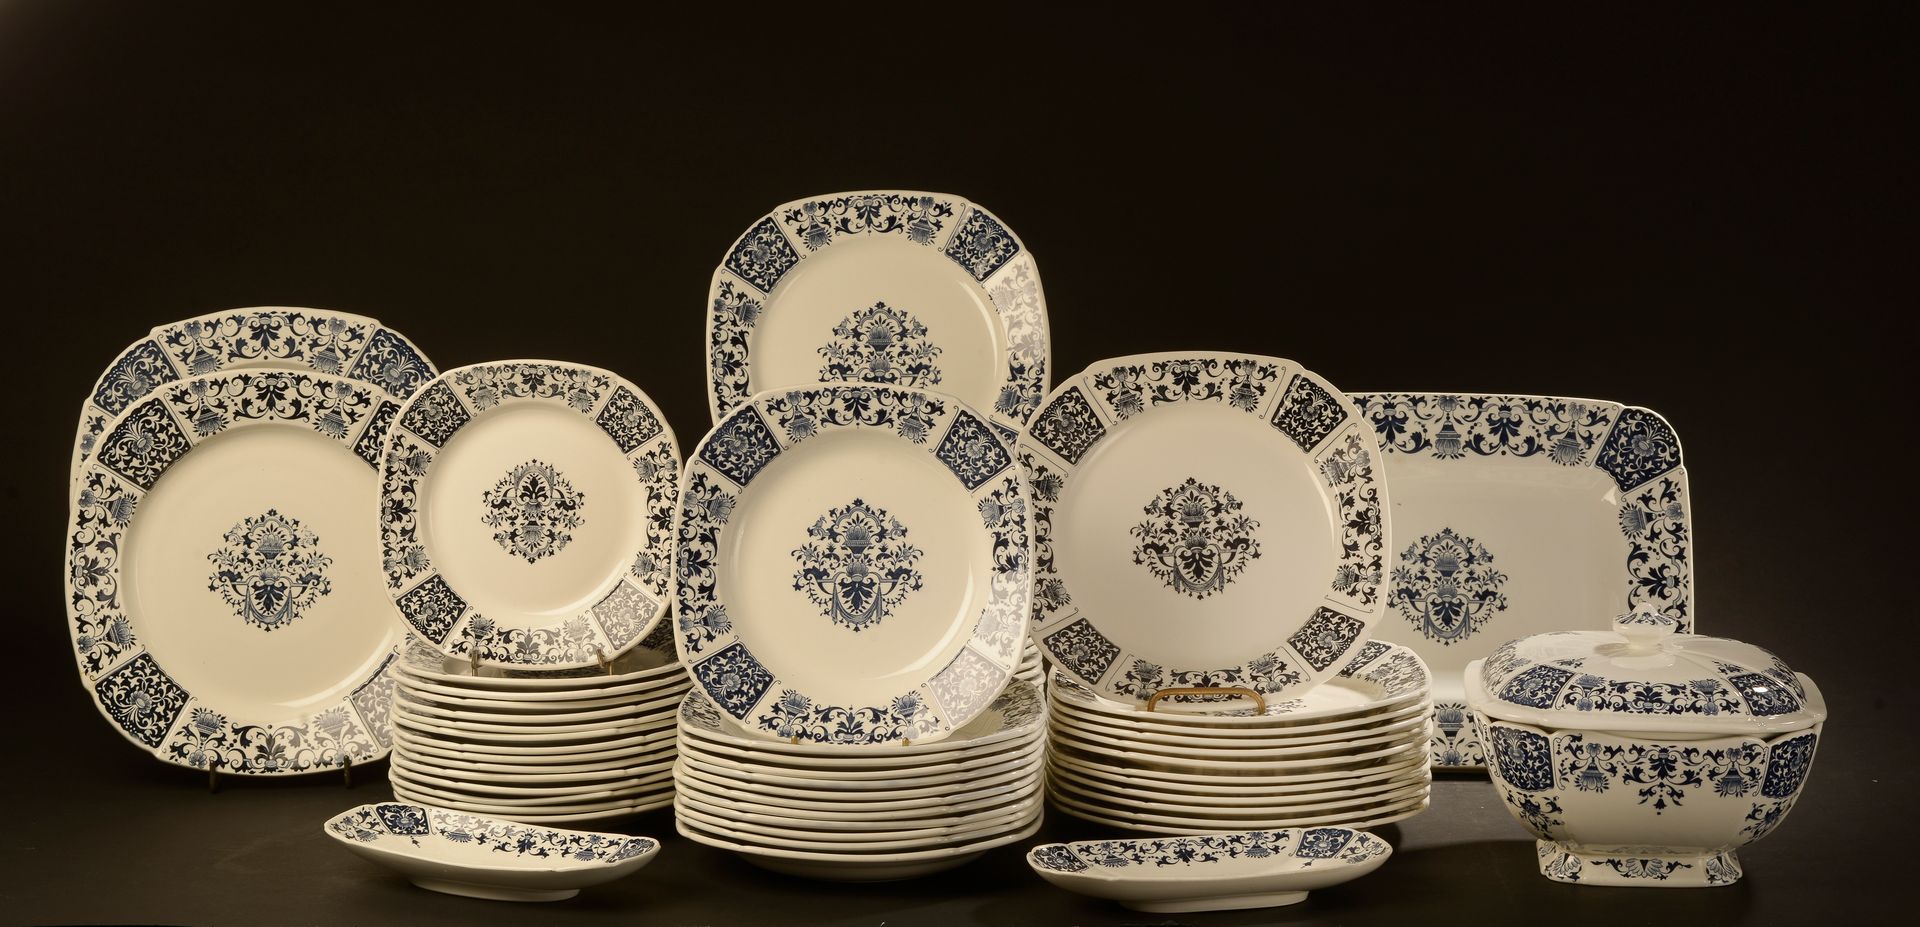 Null 吉恩。

陶器晚餐服务模型 "Carré bleu "的一部分。它包括：24个大盘子（三个有缺口），12个另一版本的大盘子（稍大），12个汤盘，11个&hellip;